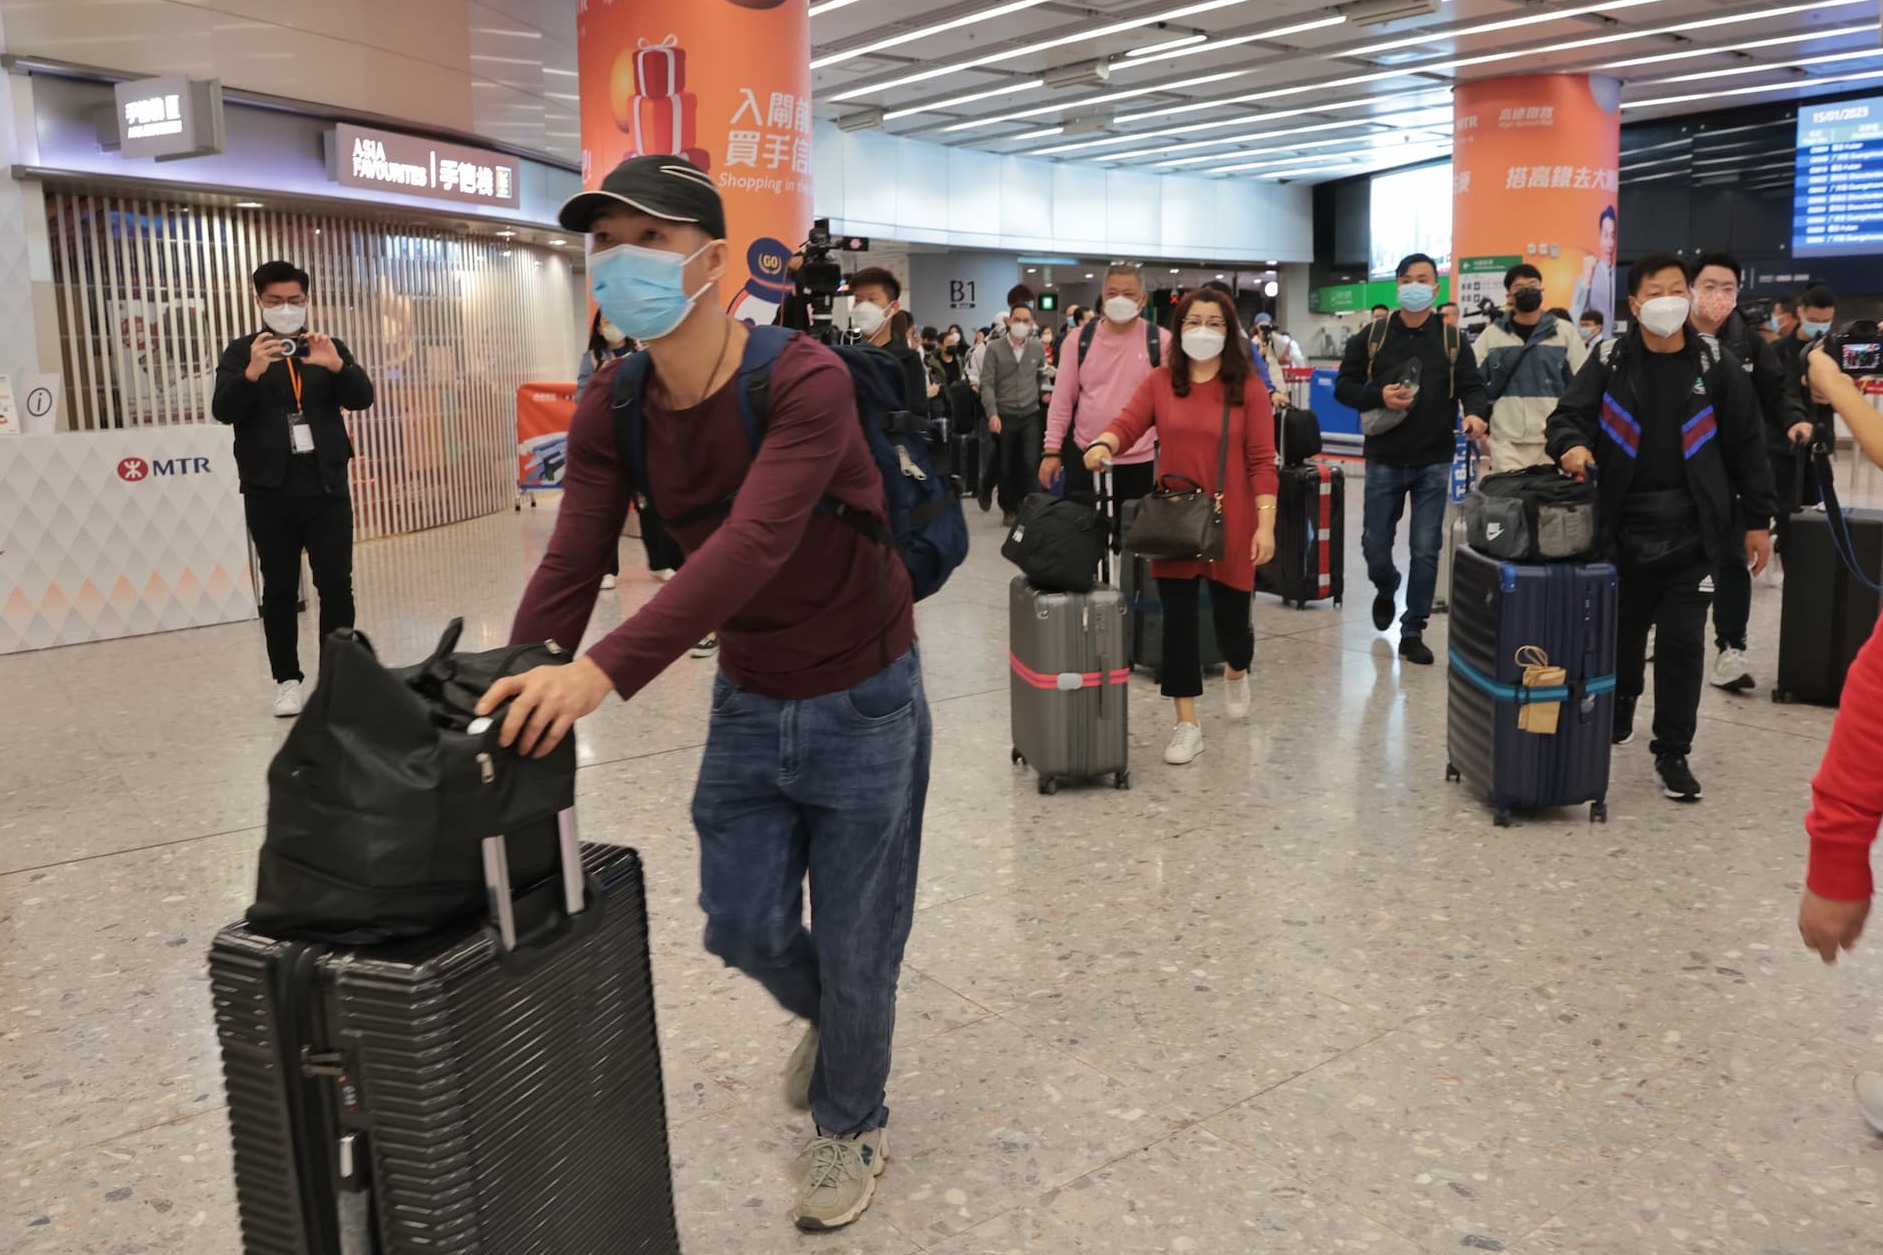 旅行社稱高鐵復運生意增五成 潮汕遊 熱推 市民報名反應熱烈